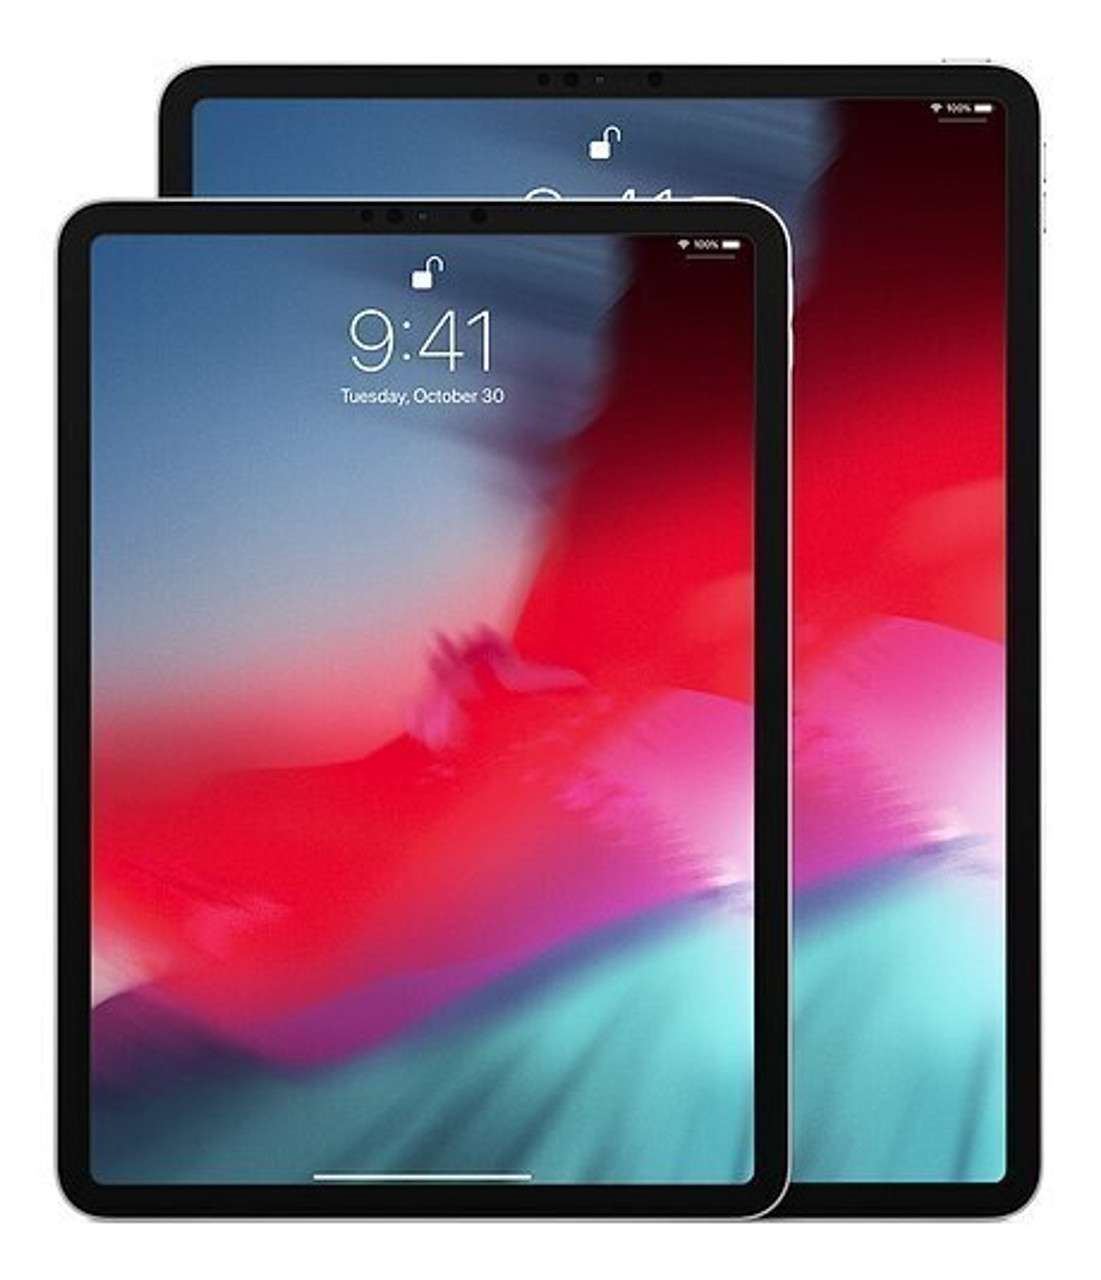 Apple iPad Pro 2nd Gen (11-inch) 512GB WiFi + Cellular - Mac Me an Offer